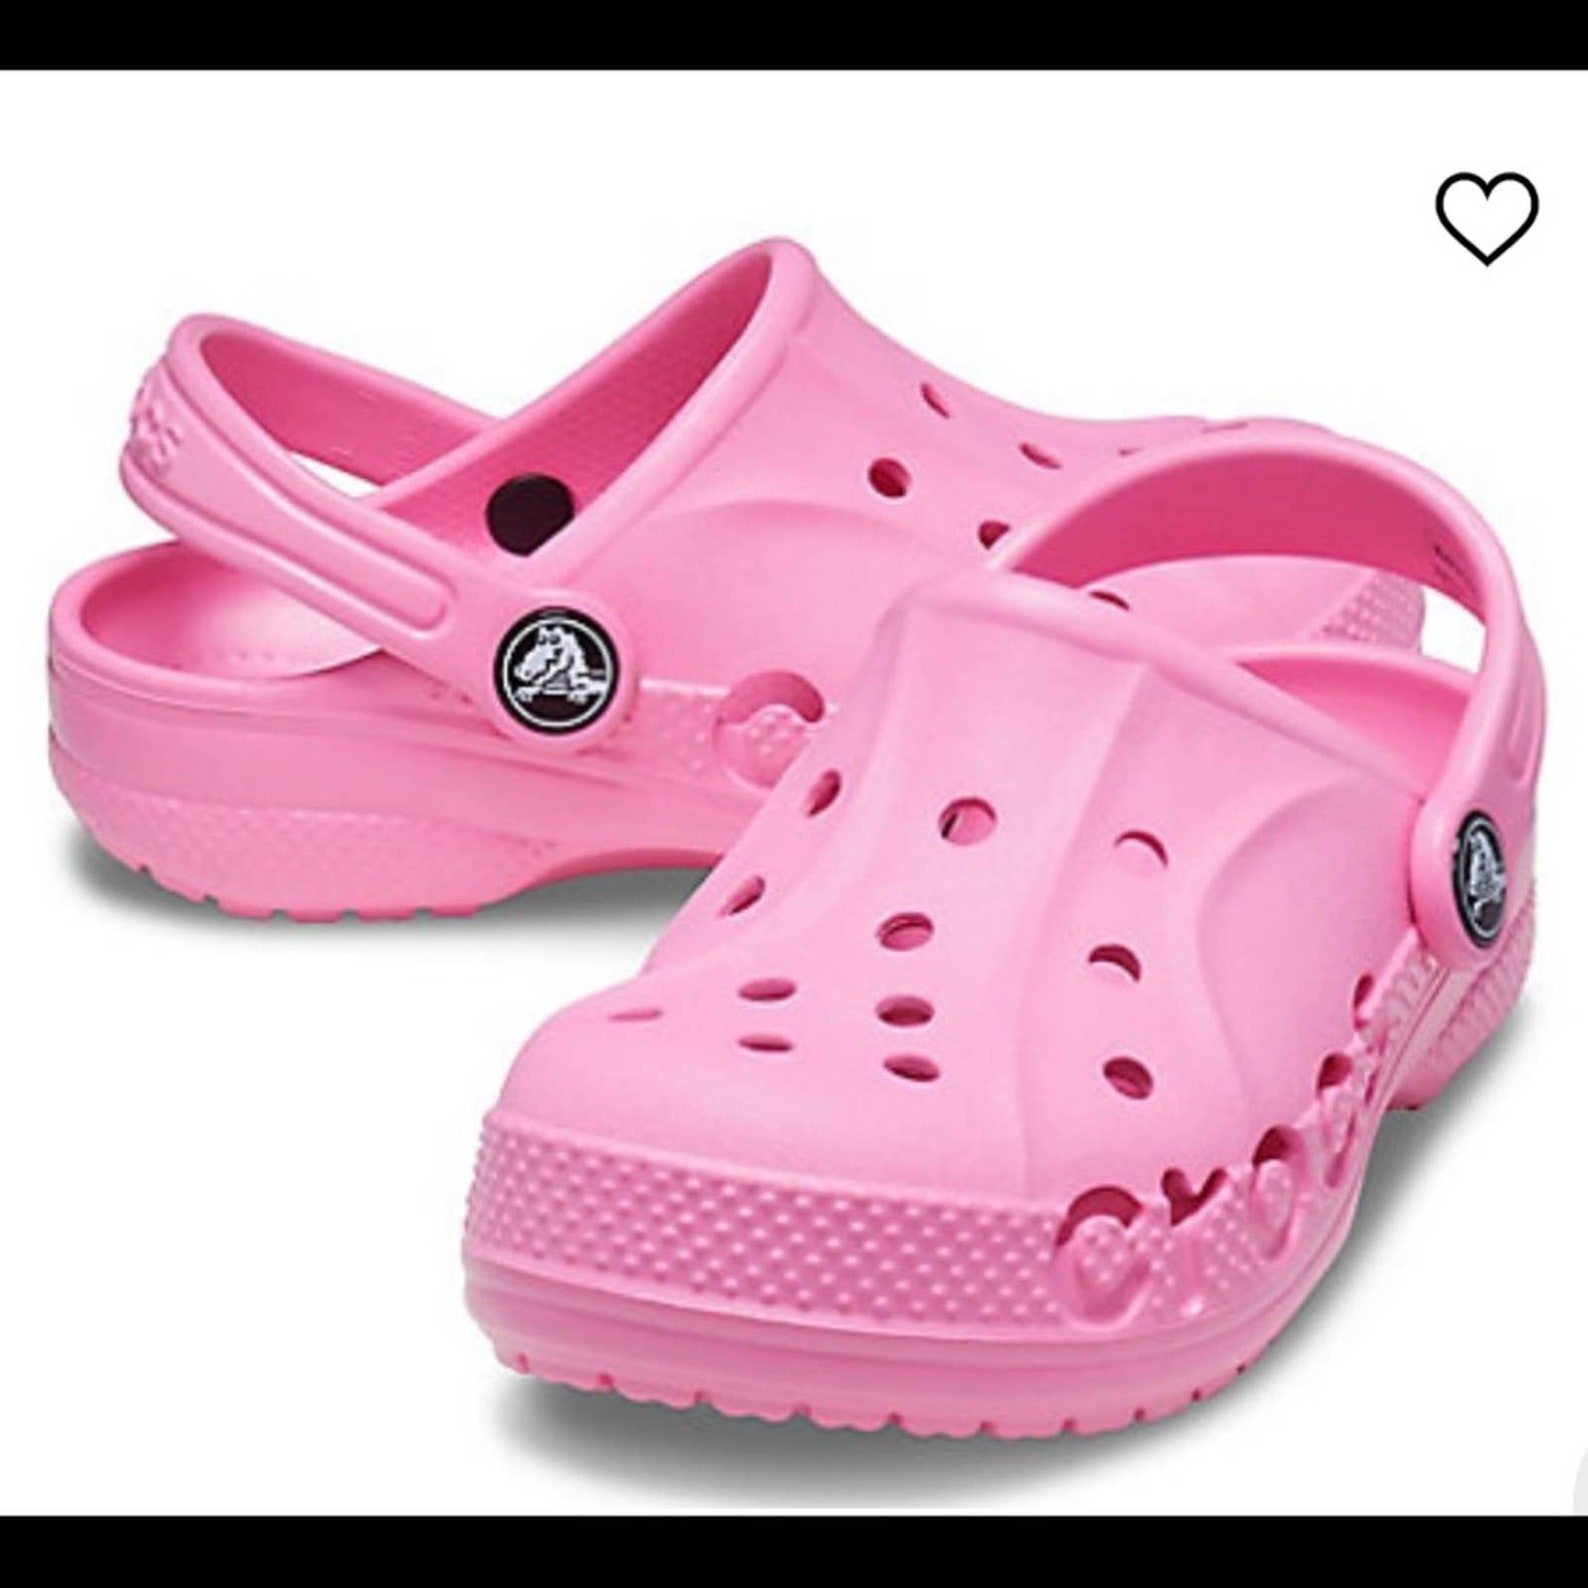 Crocs Baya Clog Unisex Slip on Clogs Shoes Size 8 | Etsy